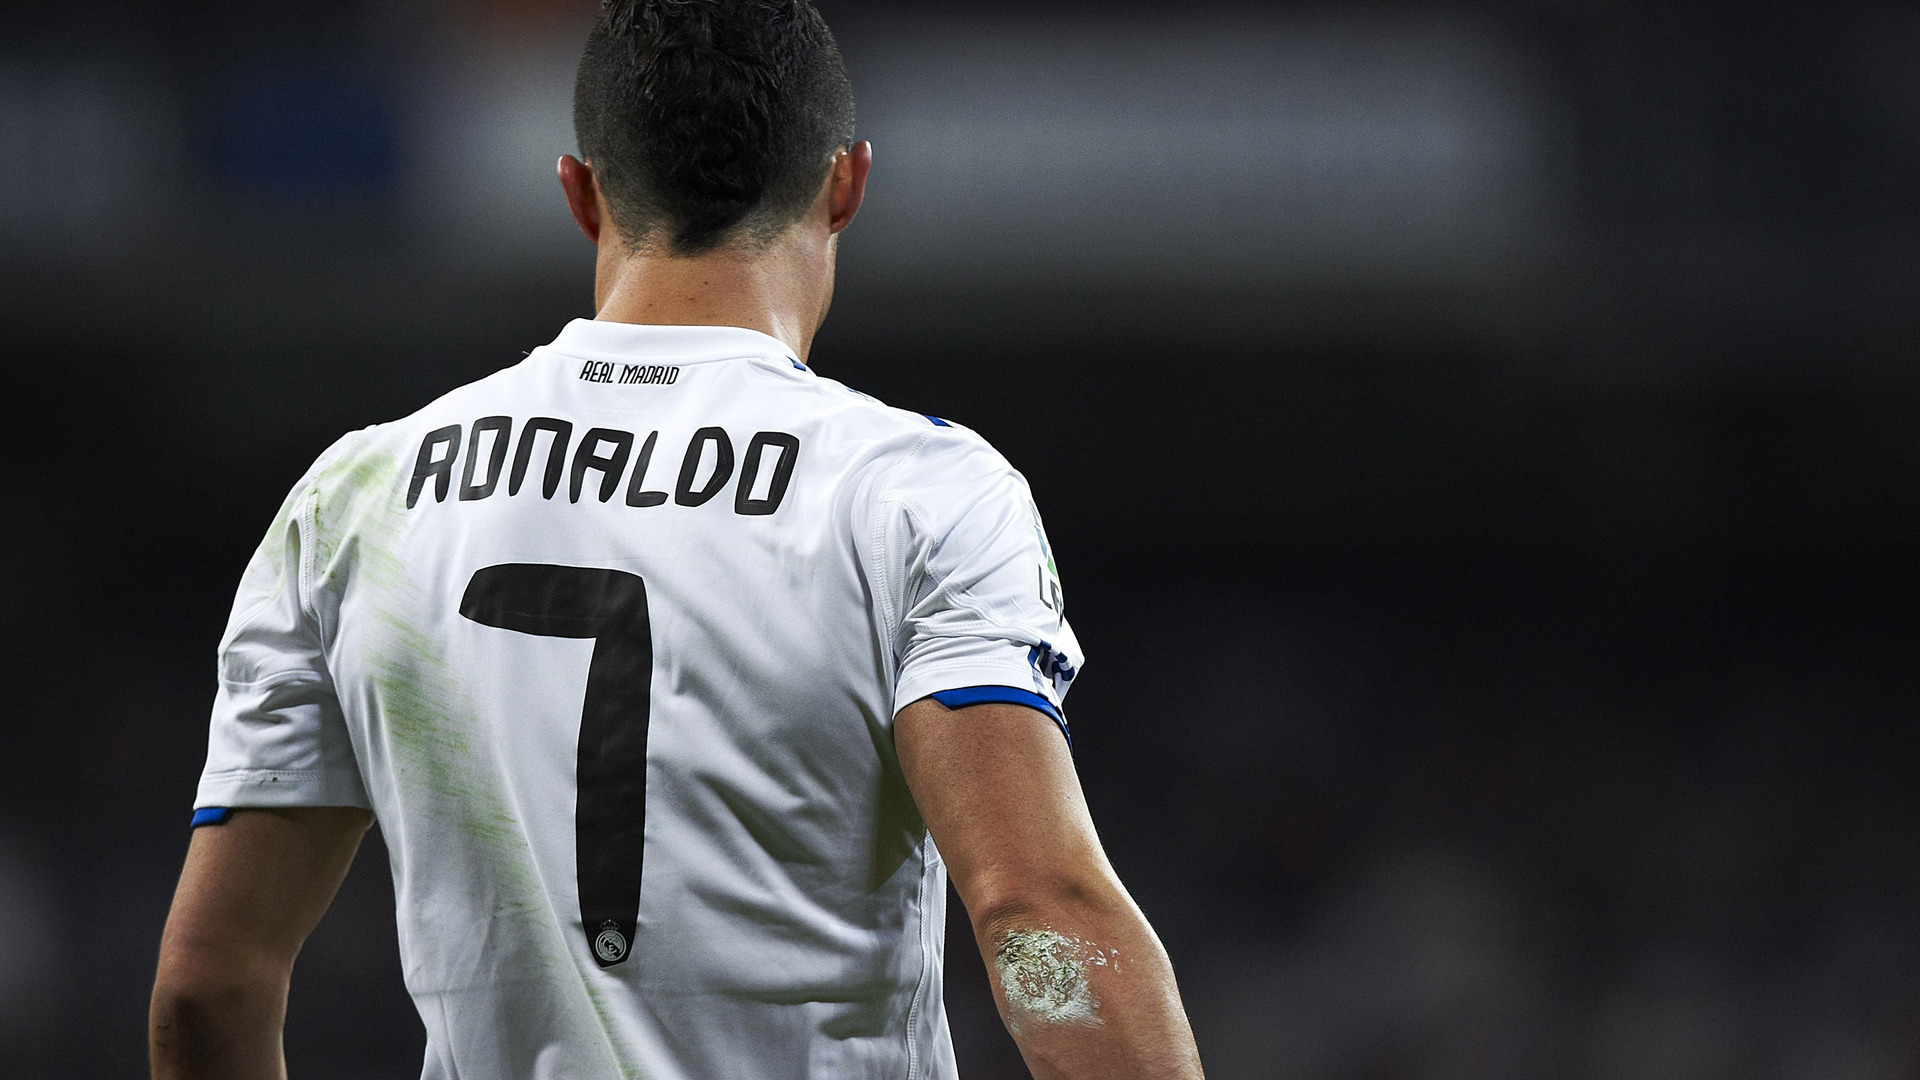 Hd Cristiano Ronaldo - HD Wallpaper 